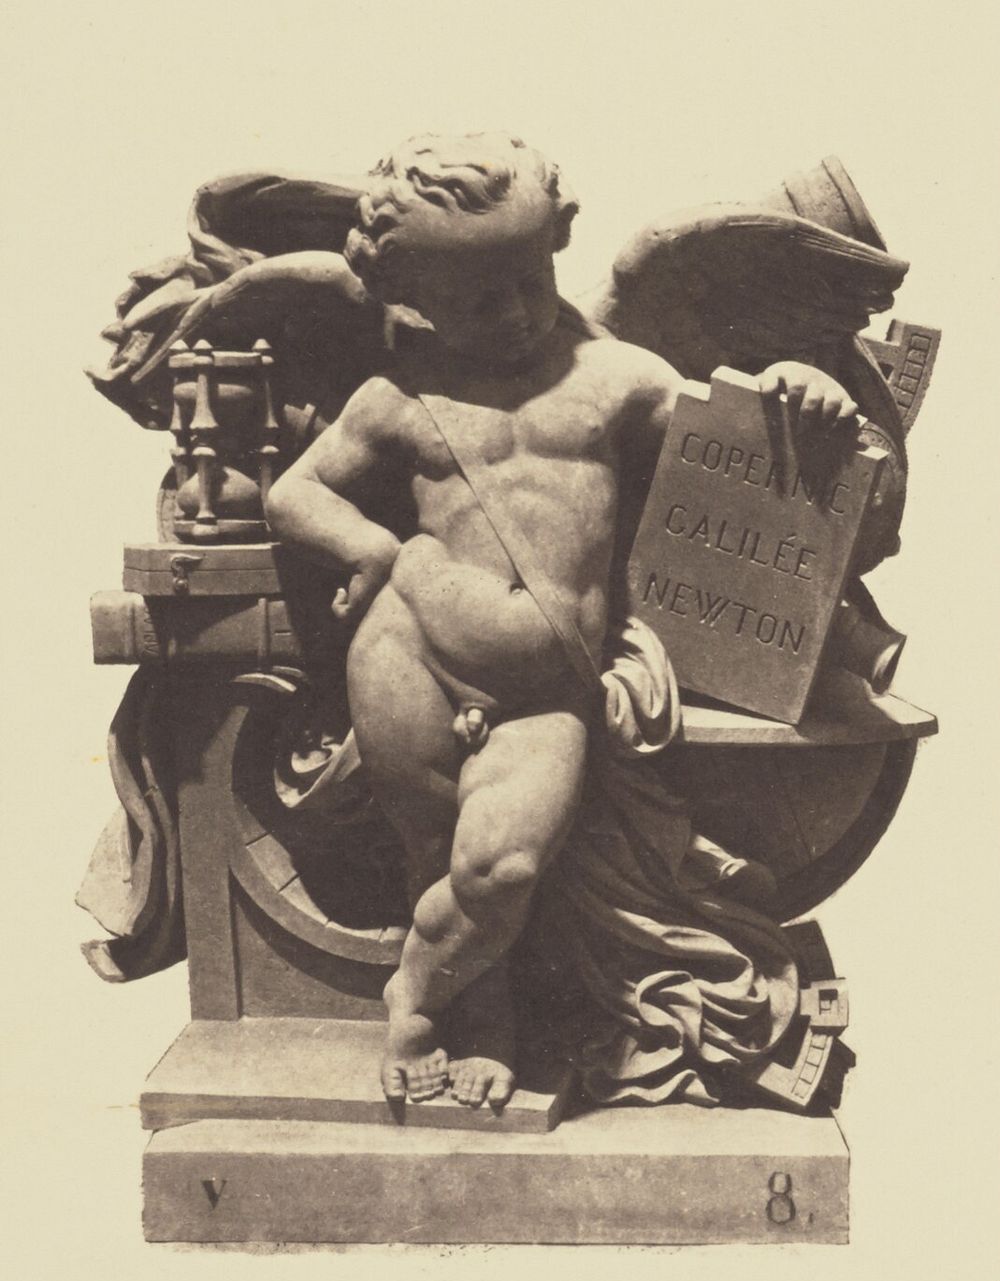 "L'Astronomie", Sculpture by Jean-François Soitoux, Decoration of the Louvre, Paris by Édouard Baldus